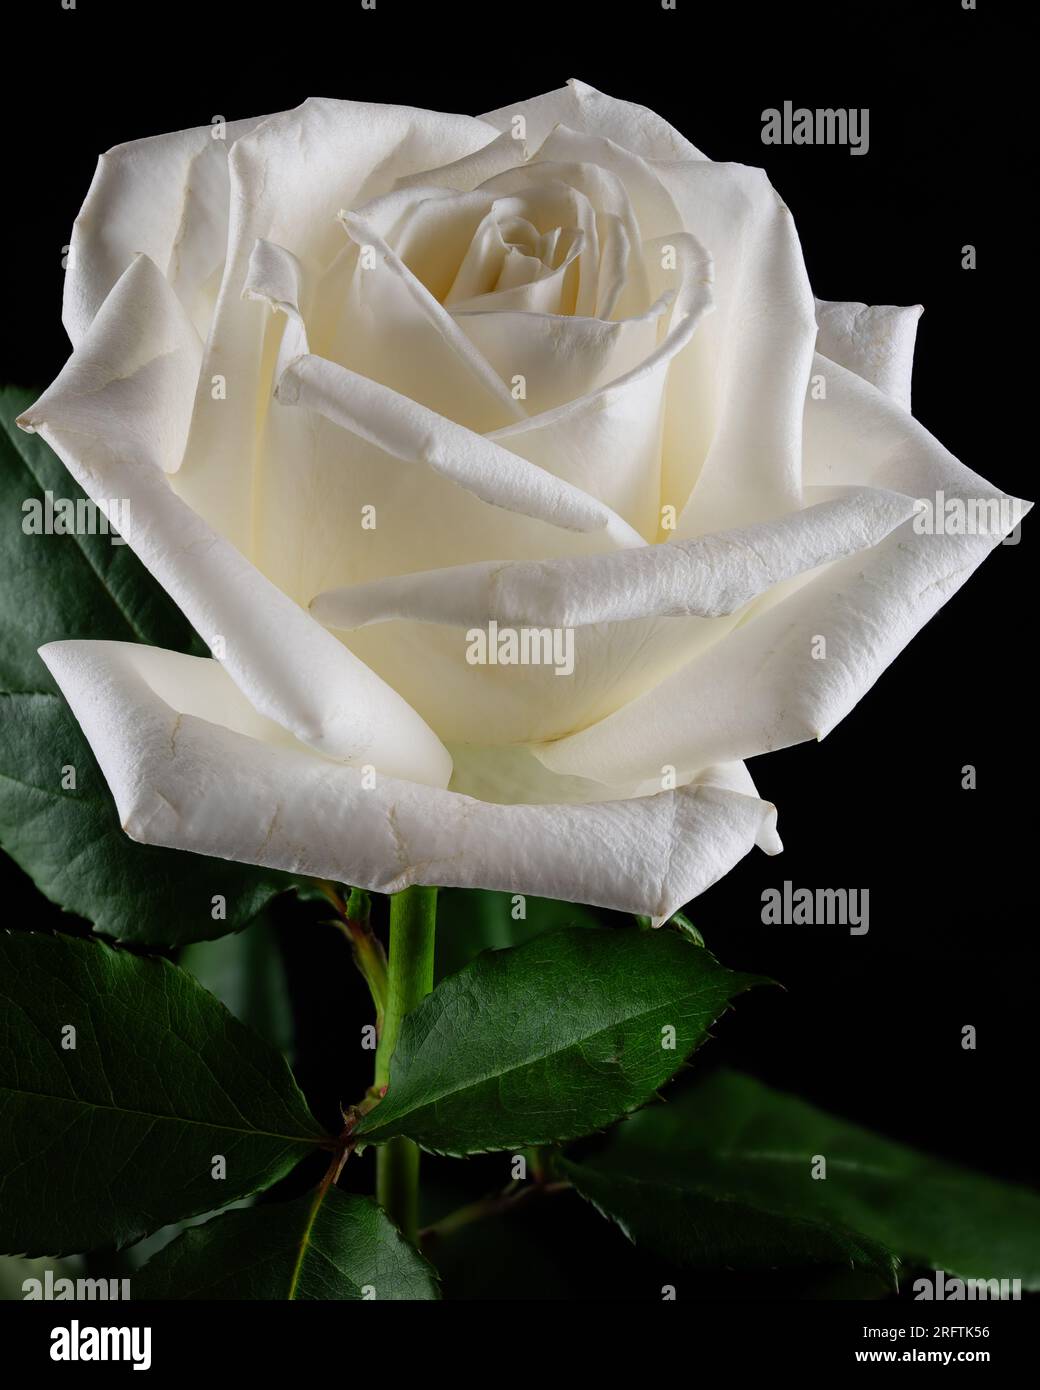 Rote und weiße und weiße Rosen mit grünen Blättern auf einem dunklen und geheimnisvollen Hintergrund. Eine der roten und weißen Rosen ist in einer verdrehten, klaren Vase. Stockfoto